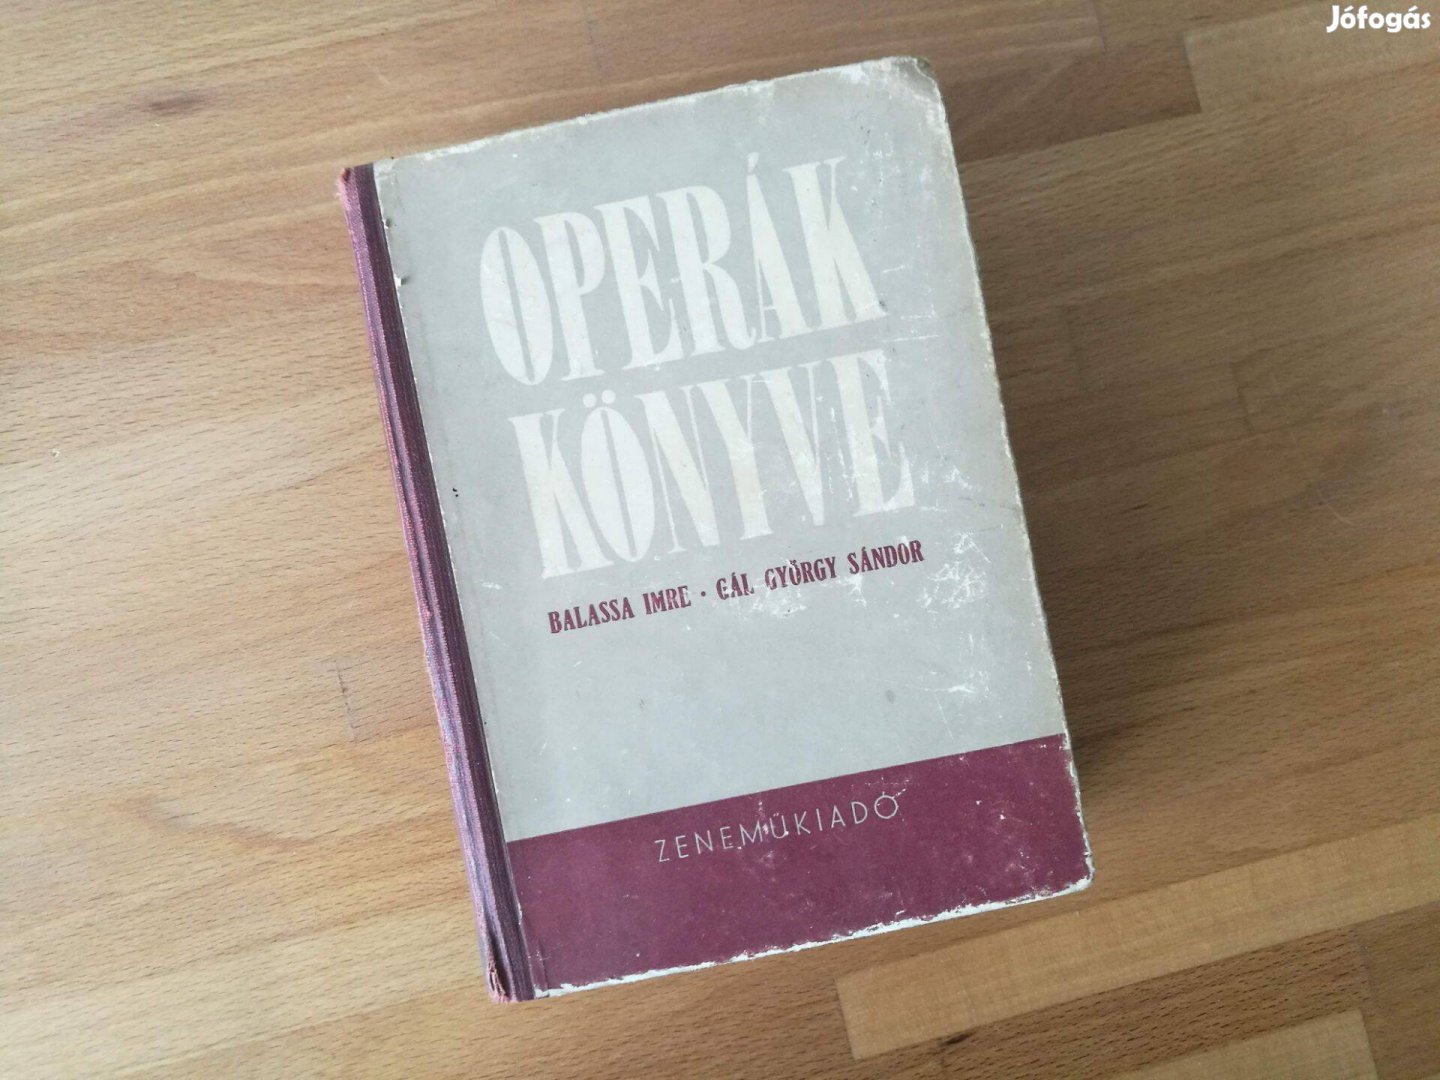 Balassa Imre-Gál György Sándor: Operák könyve (Zeneműkiadó, 1954)